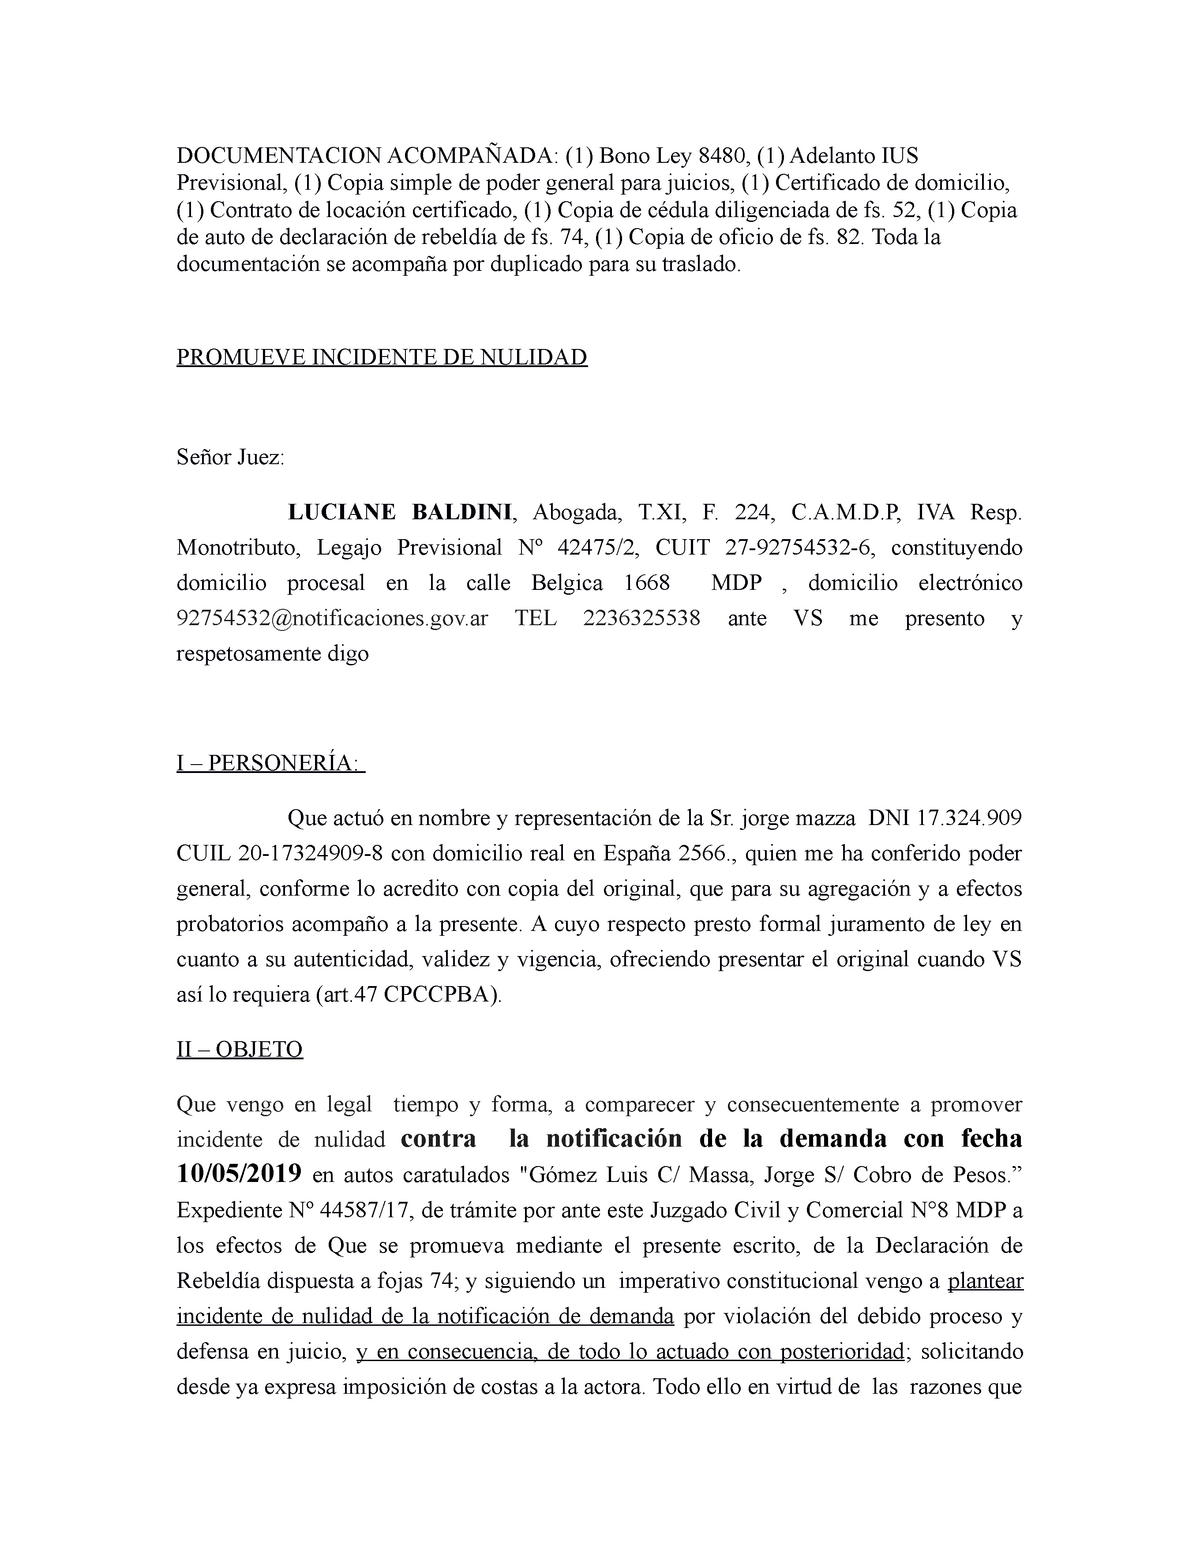 Trabajo práctico de Incidente DE Nulidad -PRÁCTICA - DOCUMENTACION  ACOMPAÑADA: (1) Bono Ley 8480, - Studocu